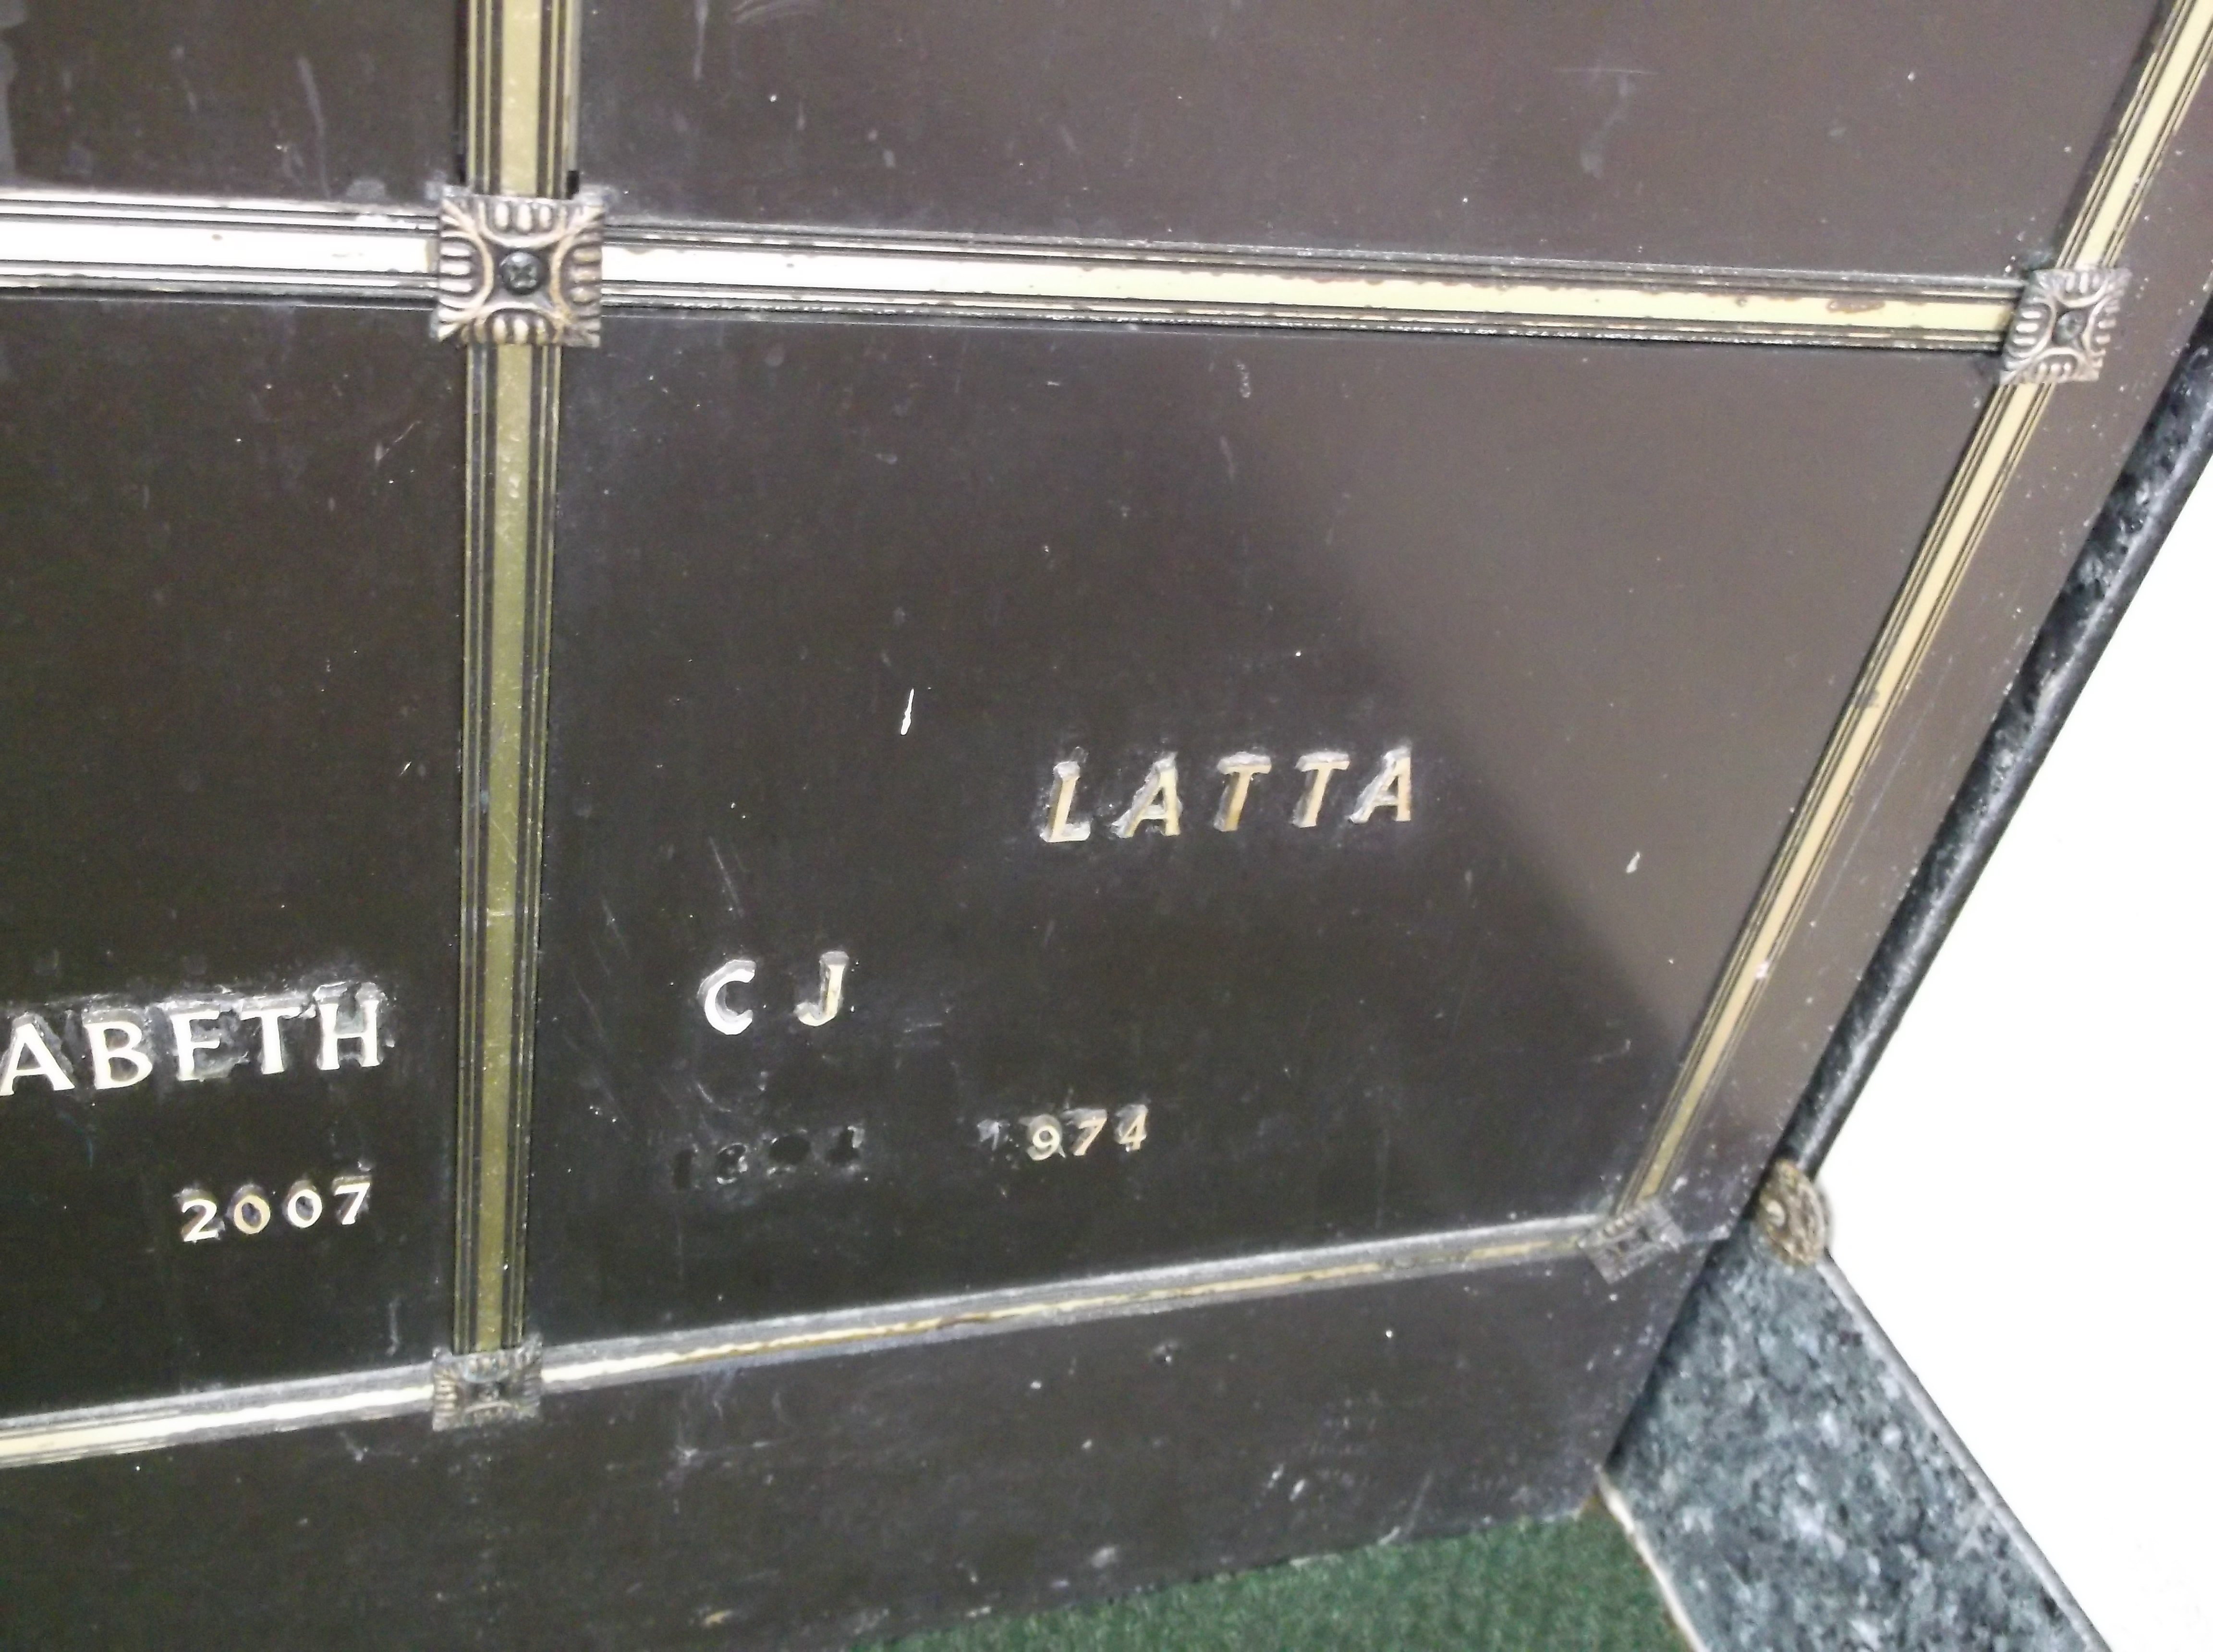 C J Latta